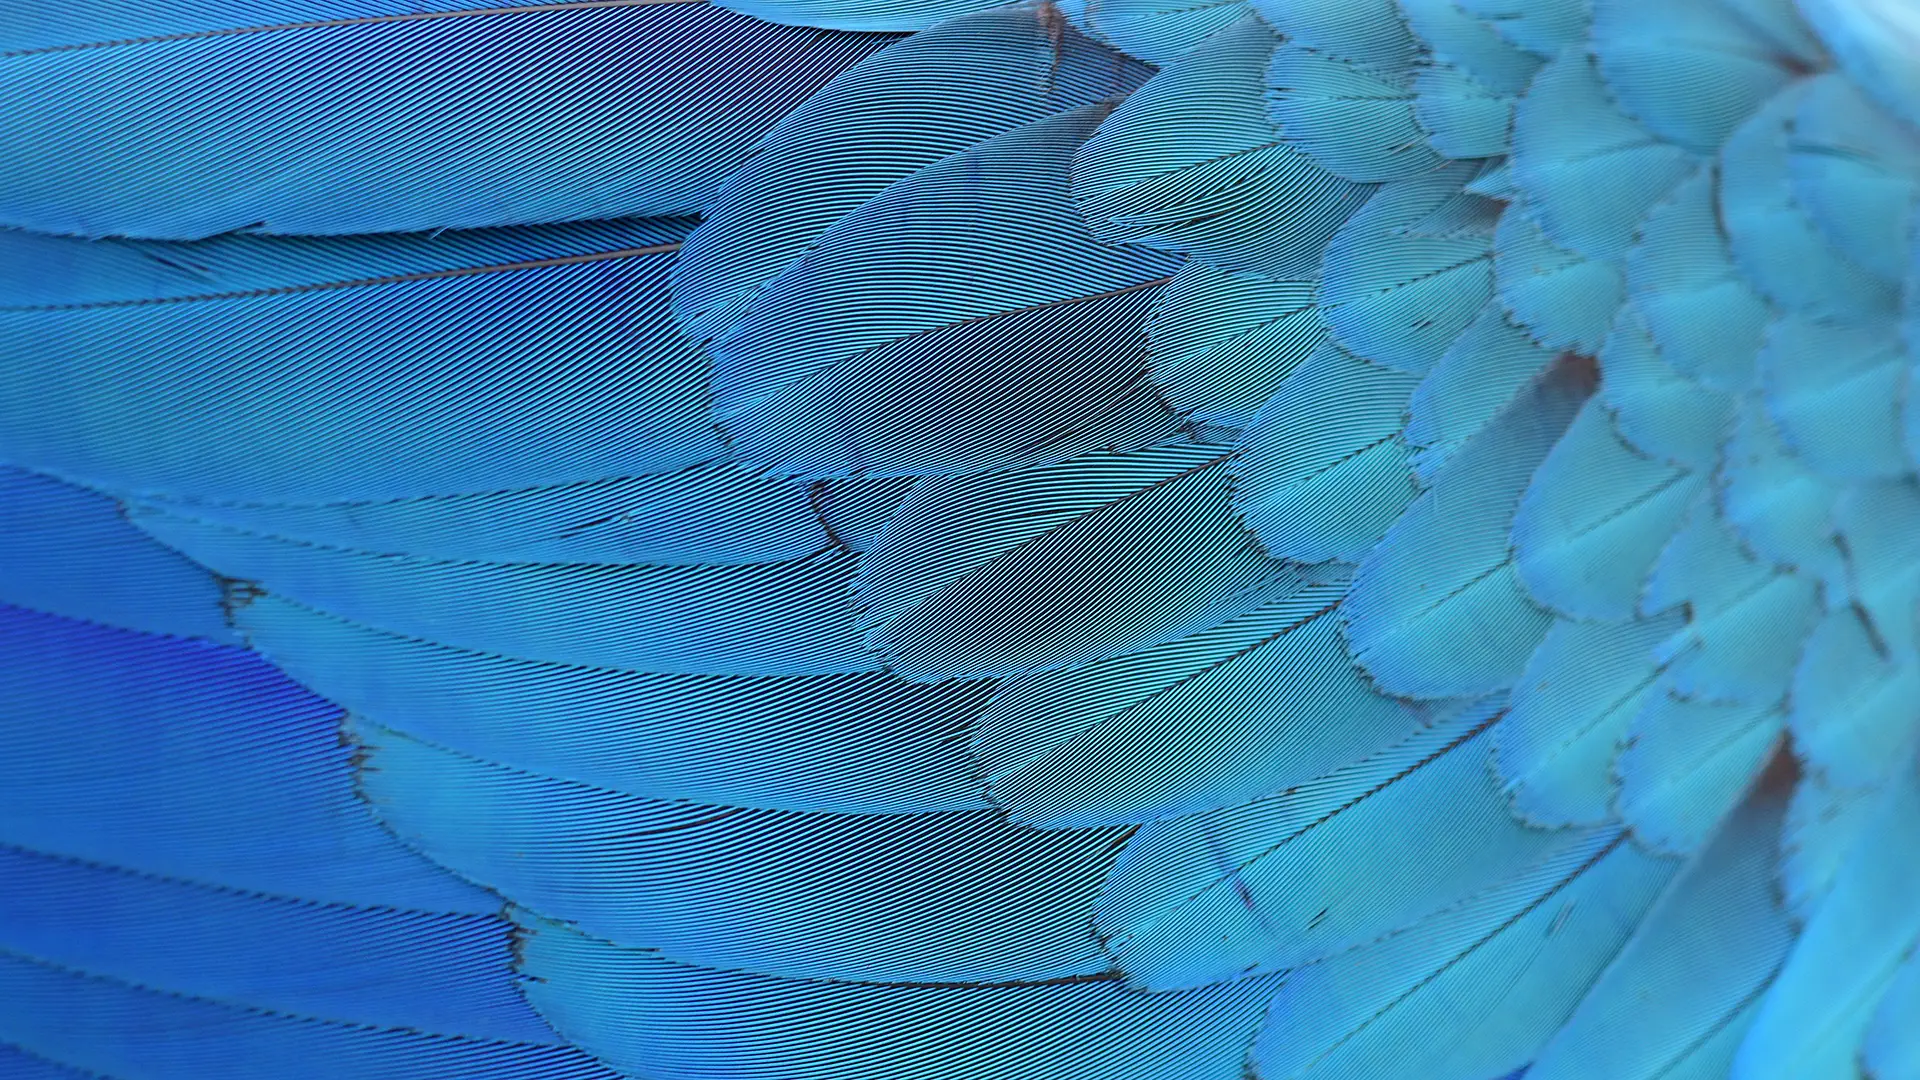 Le plumage bleu brillant des oiseaux, comme celui des aras de Spix ( Cyanopsitta spixii ), tire sa couleur non des pigments mais des structures des plumes qui diffusent la lumière.